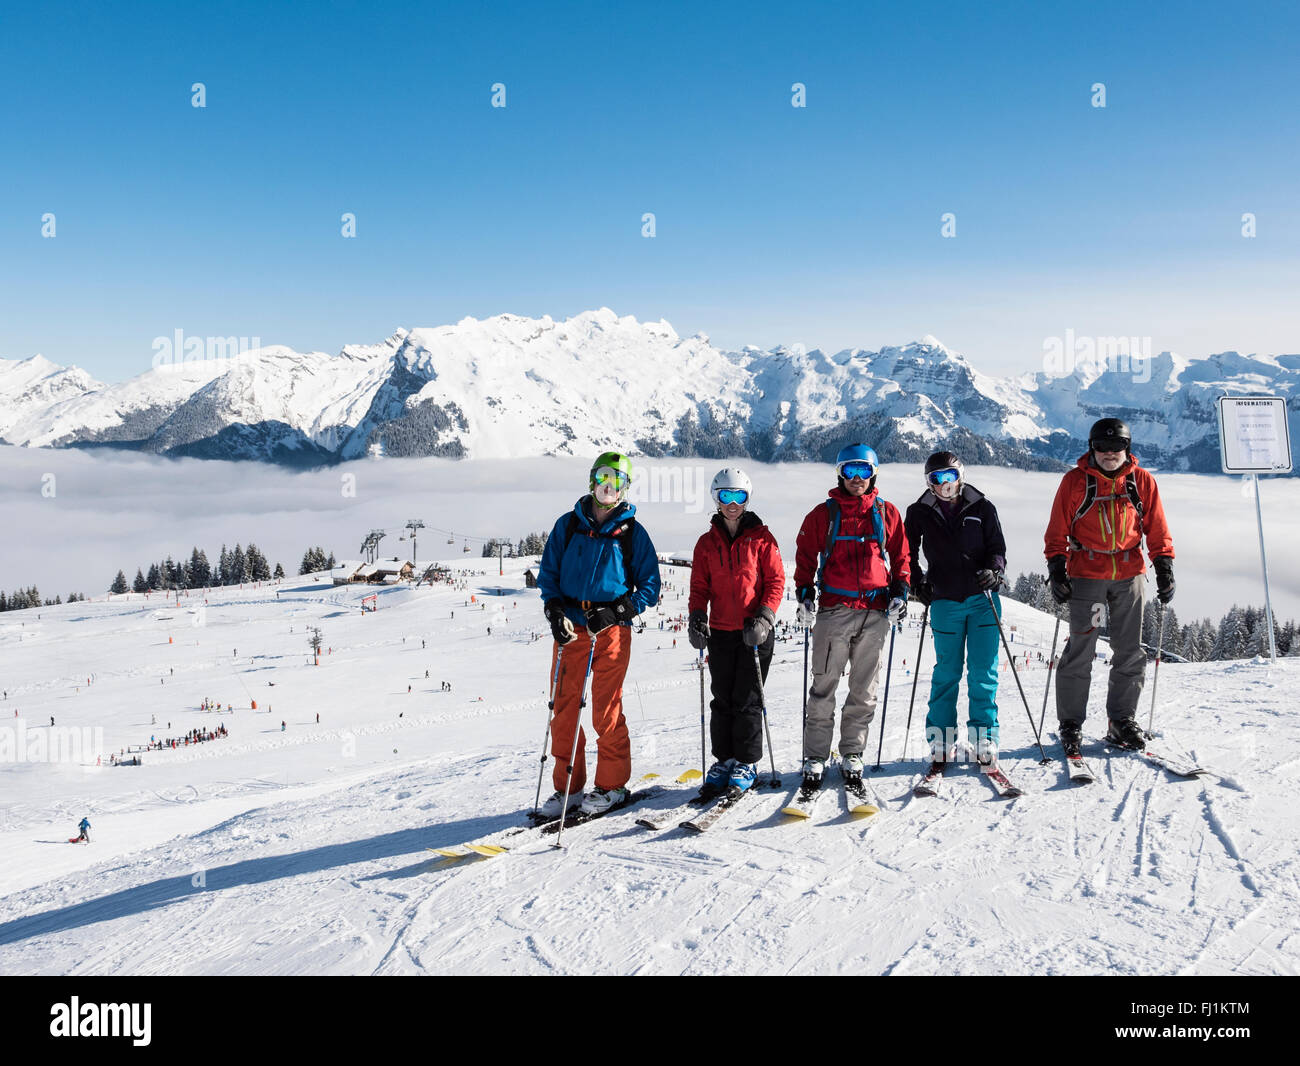 Les Skieurs sur les pentes de neige en Samoens-Morillon de ski dans le Grand Massif et les nuages bas dans la vallée du Giffre. Samoens, France Banque D'Images